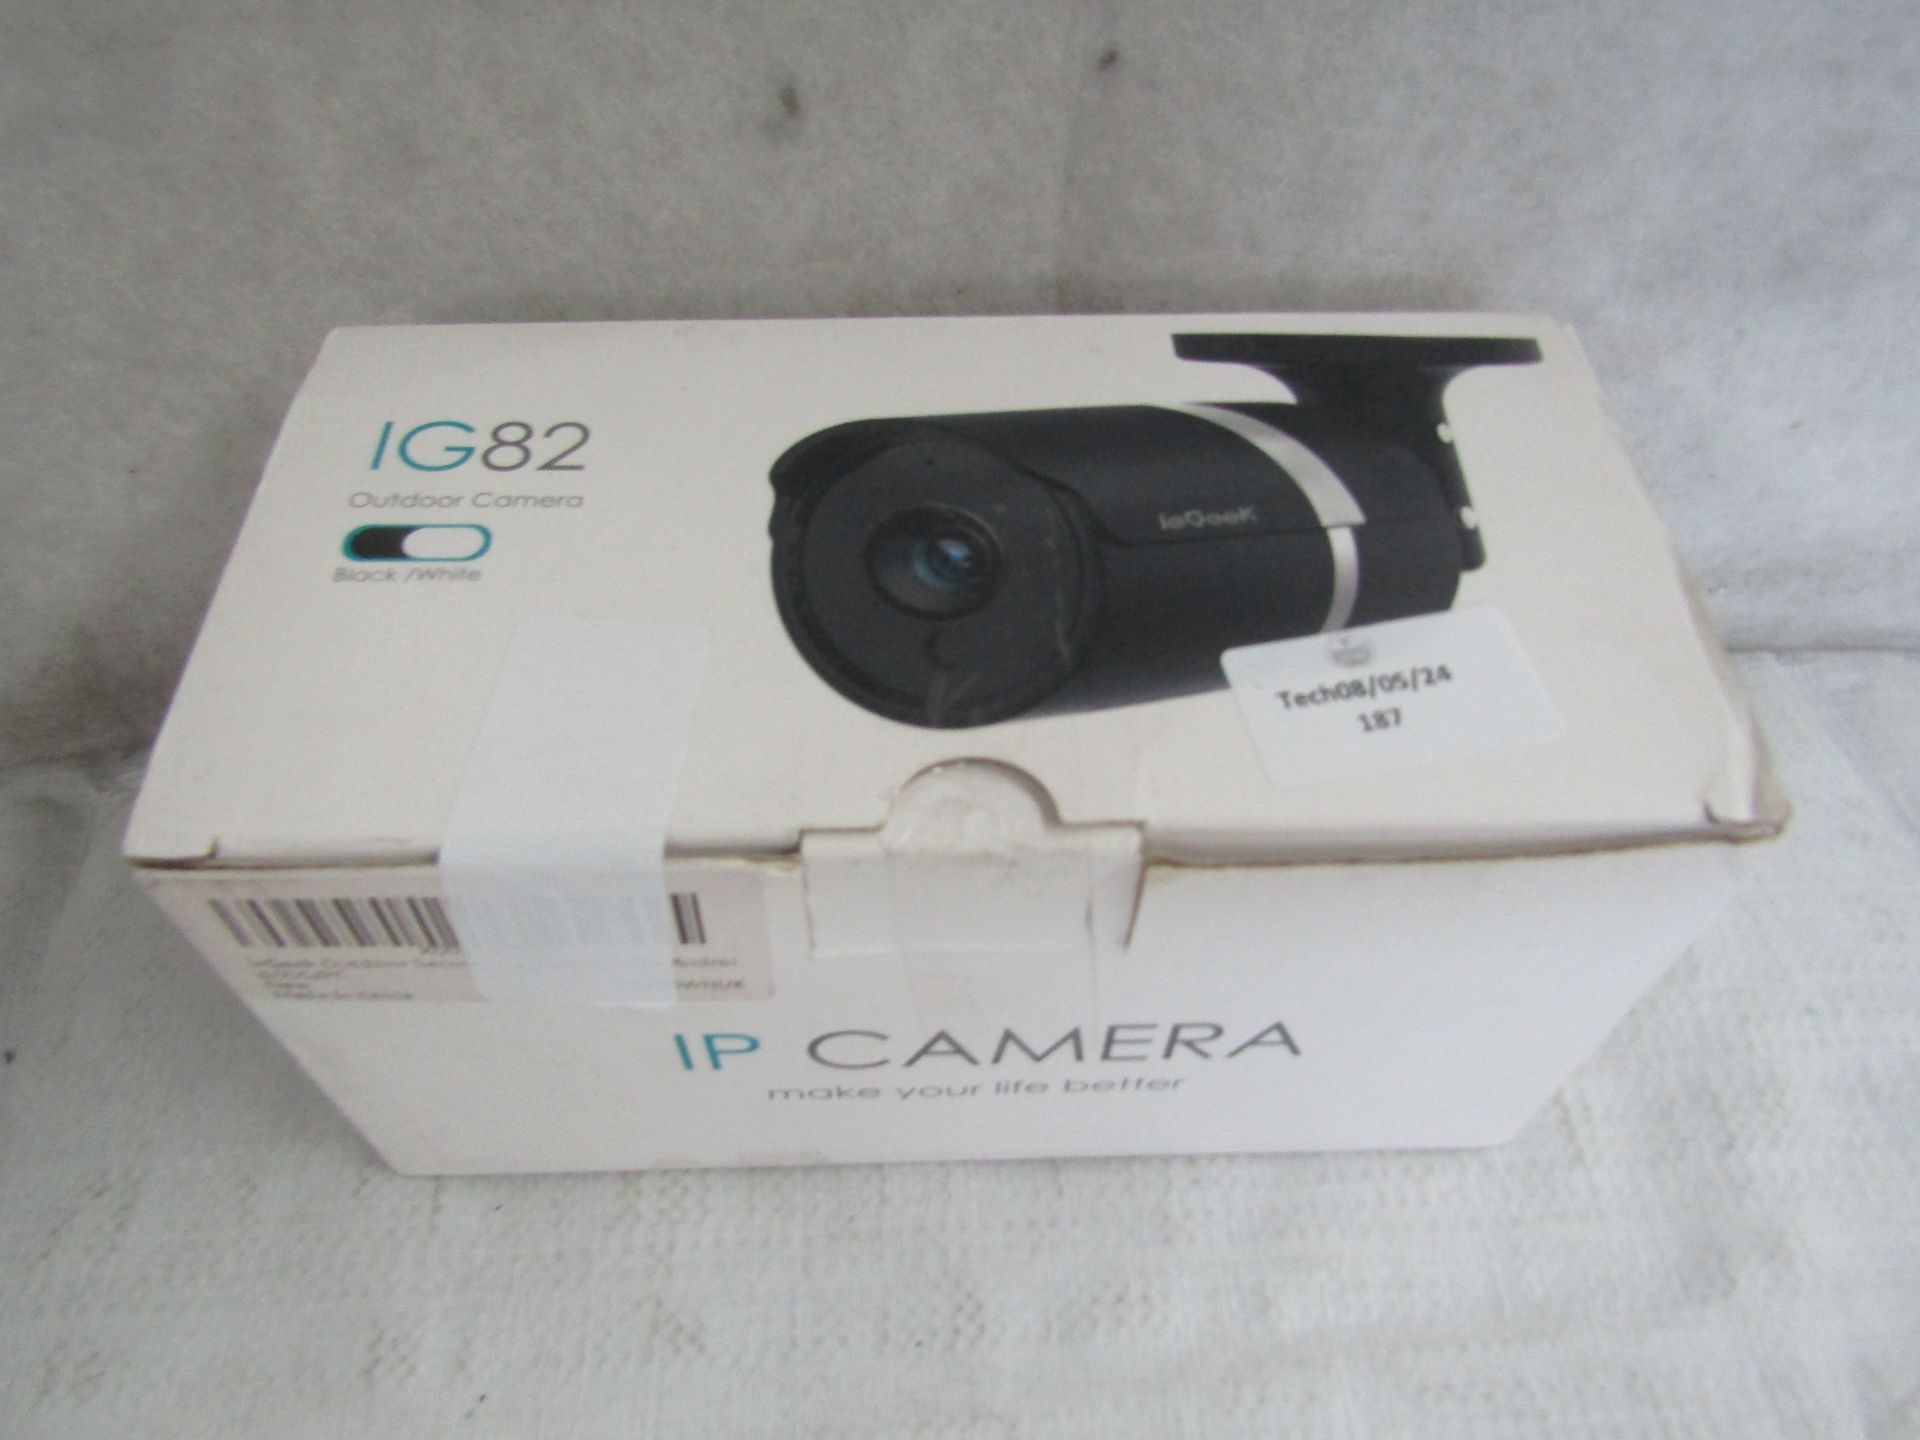 Ip Camera Outdoor IG82 Security Camera